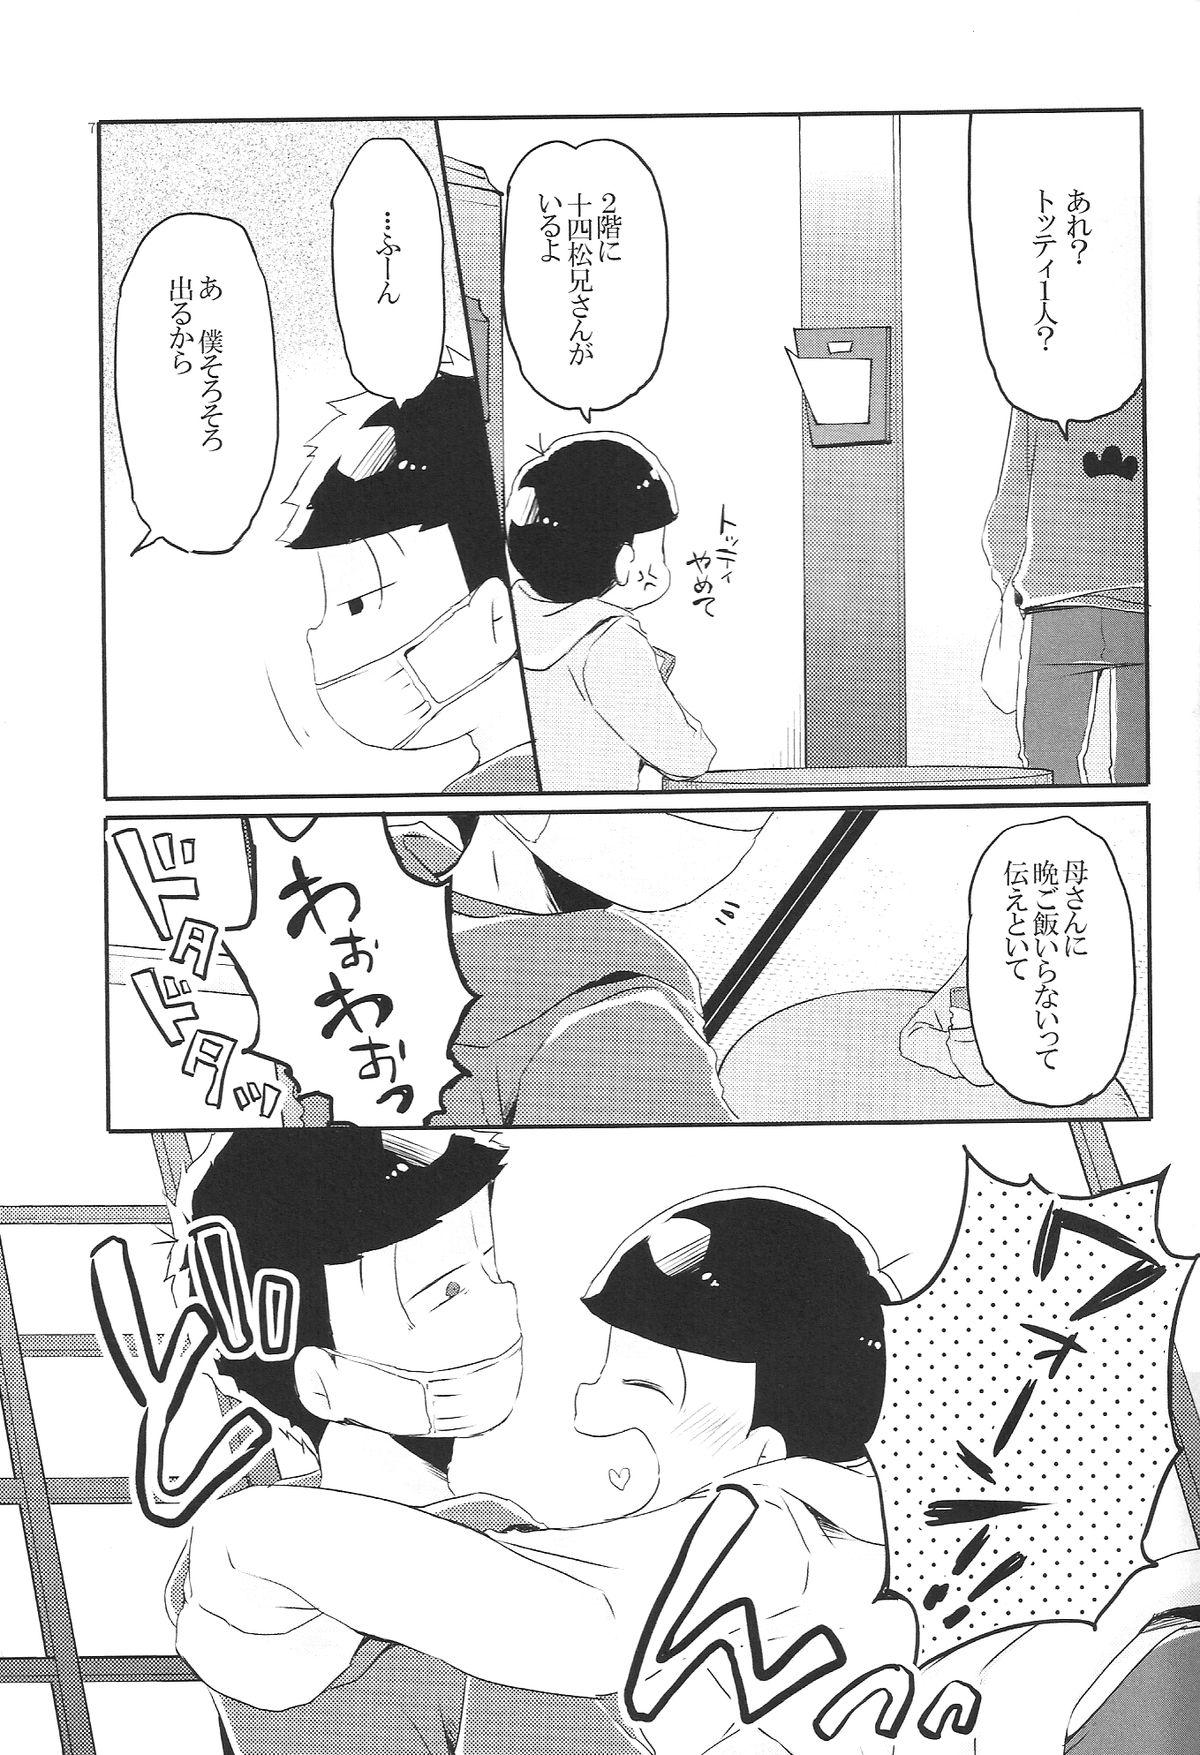 Ejaculations Inu no Kimochi Neko no Kimochi Boku no Kimochi - Osomatsu-san Love Making - Page 6